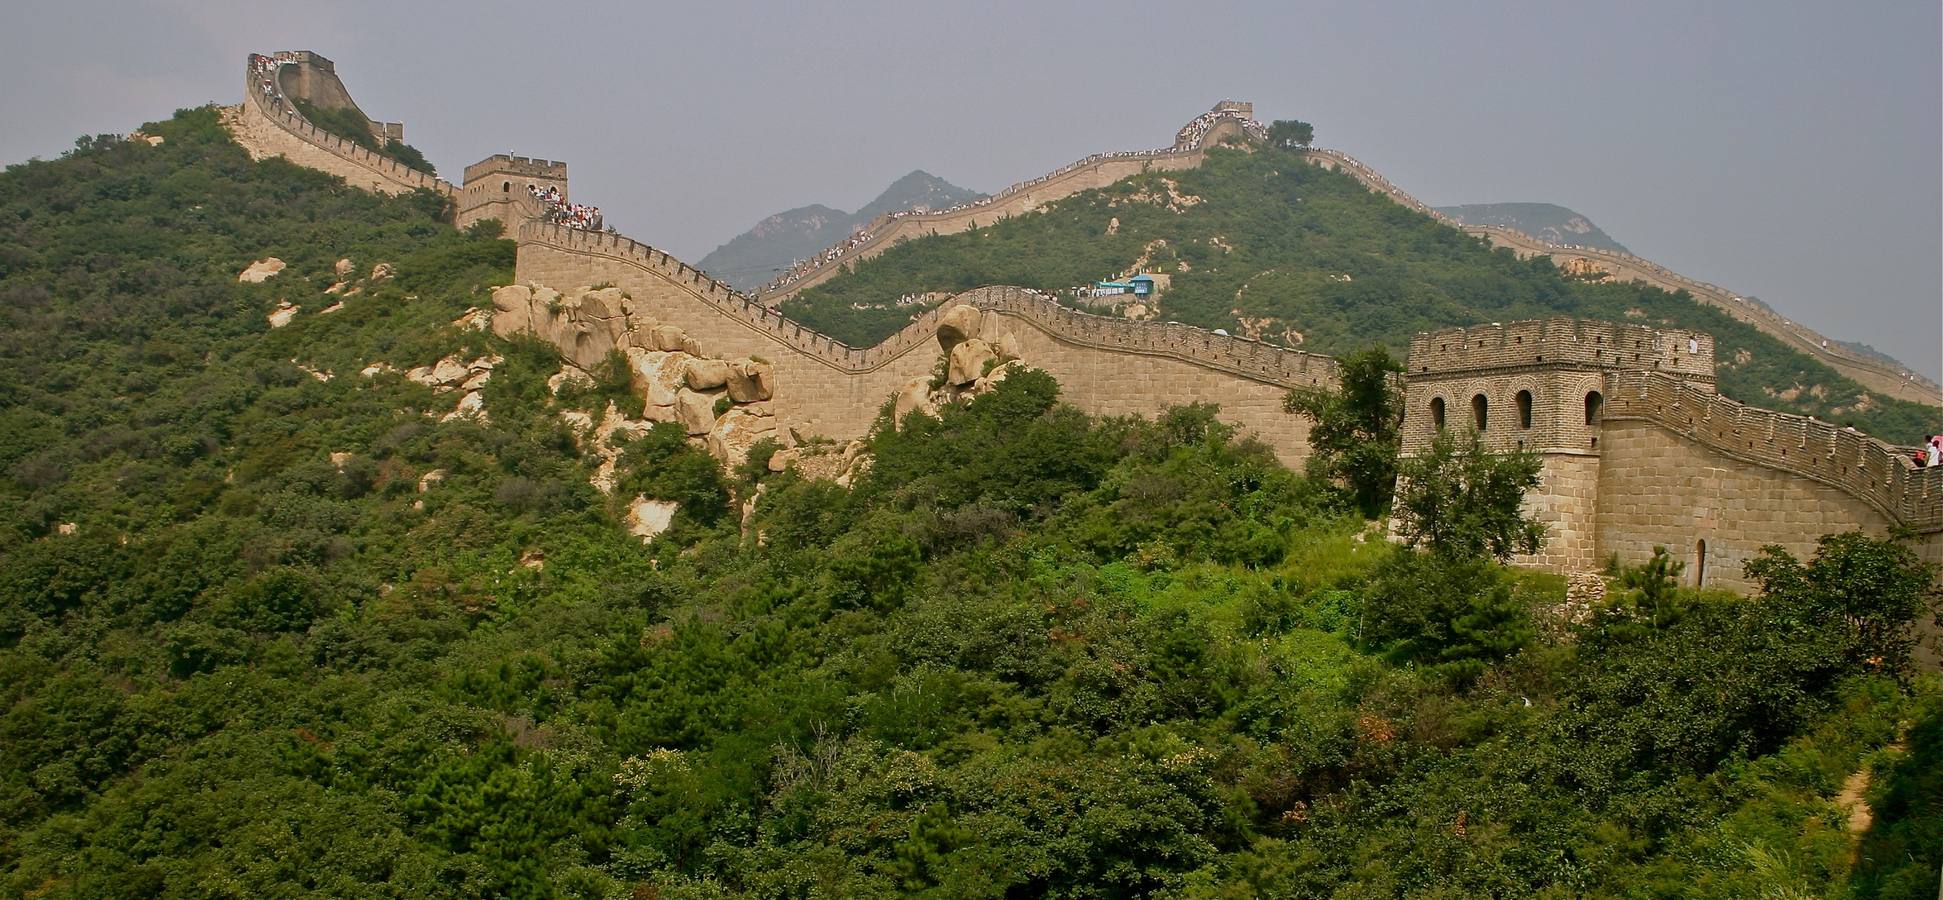 La Gran Muralla china. 9 millones de visitantes al año